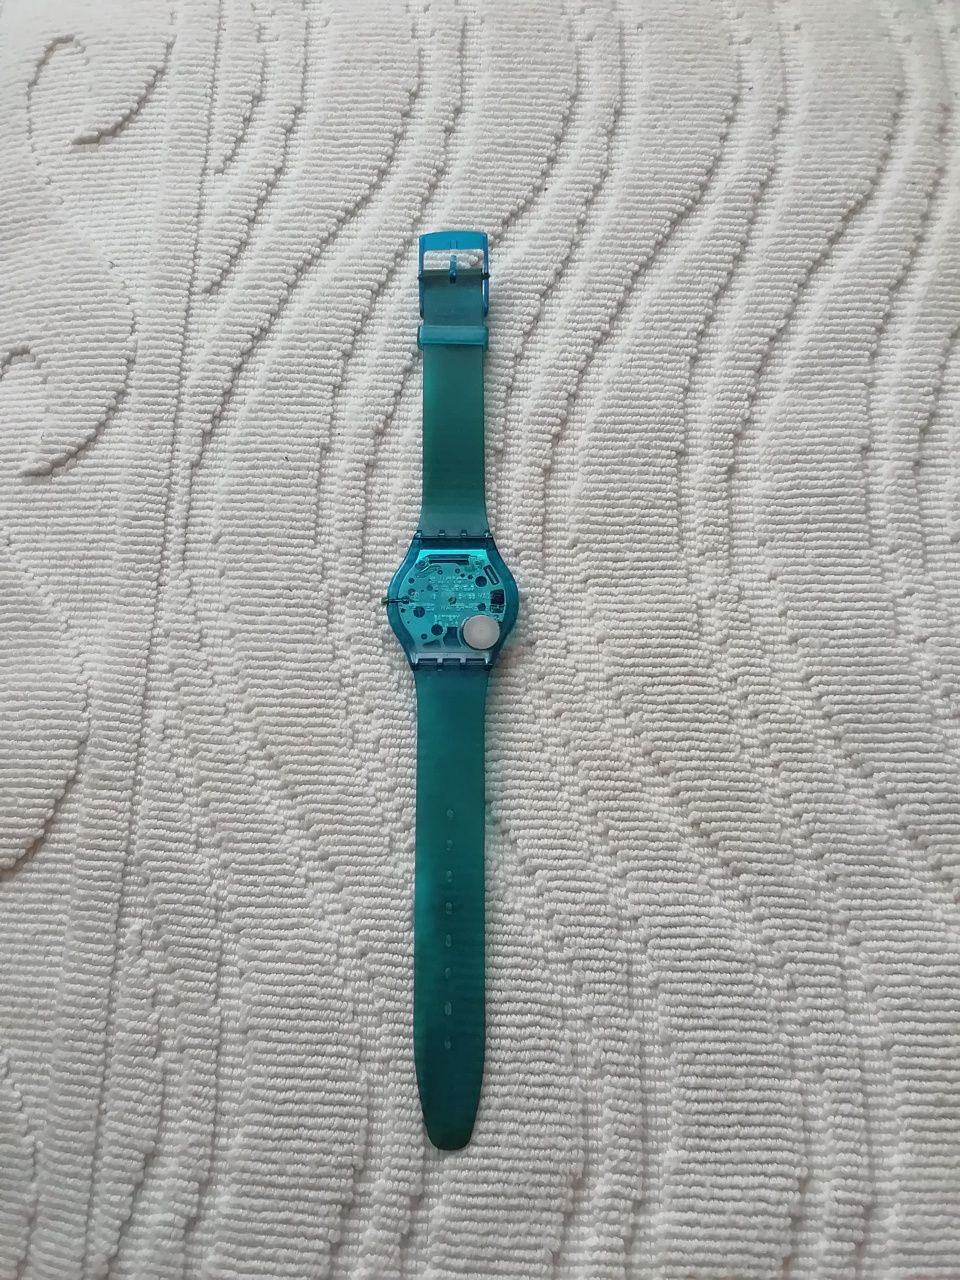 Relógio Swatch, de 2000, avariado